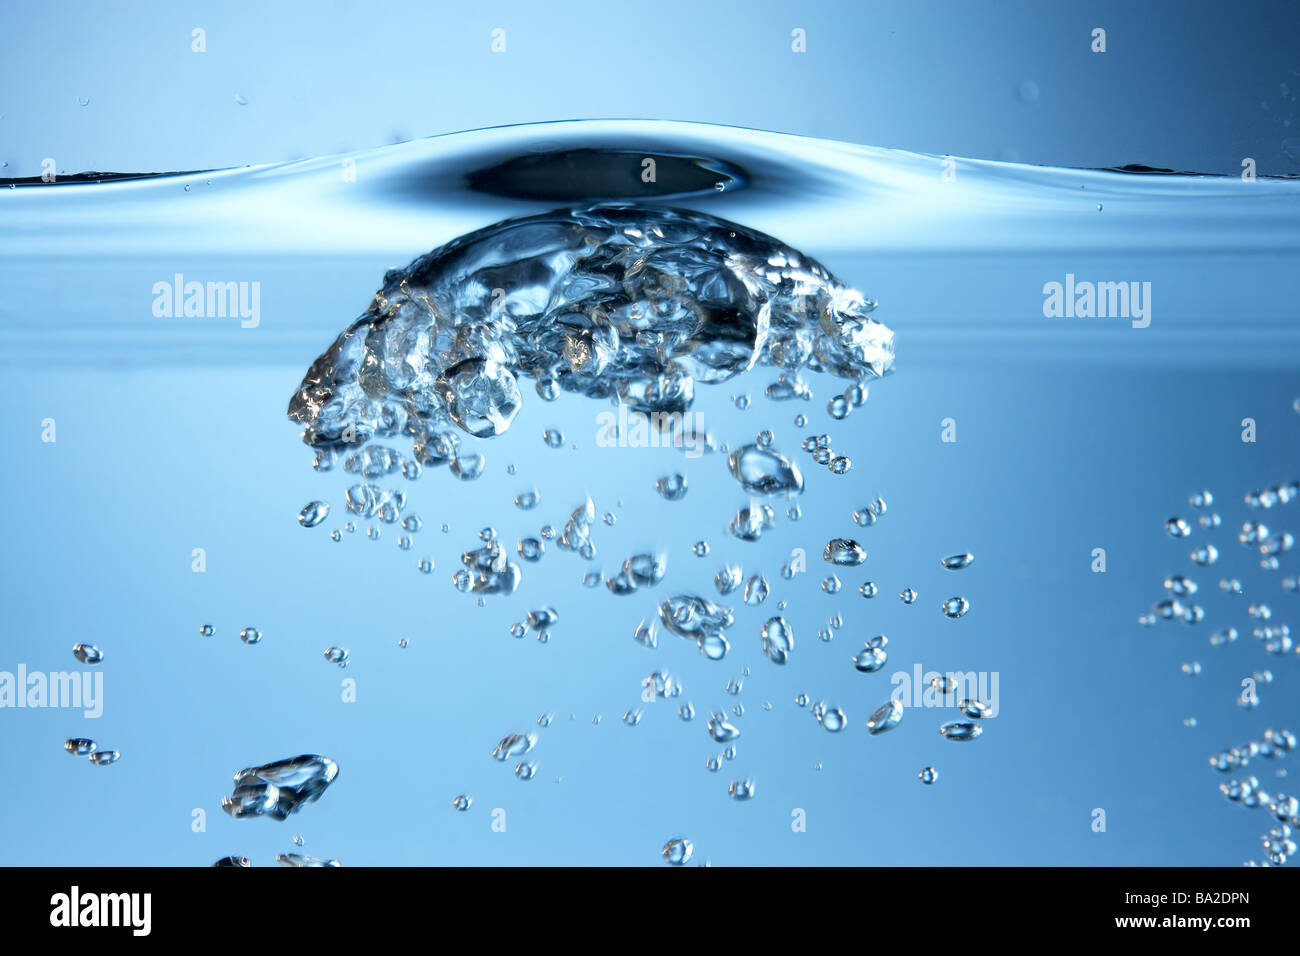 Luftblasen In klarem Wasser Stockfoto